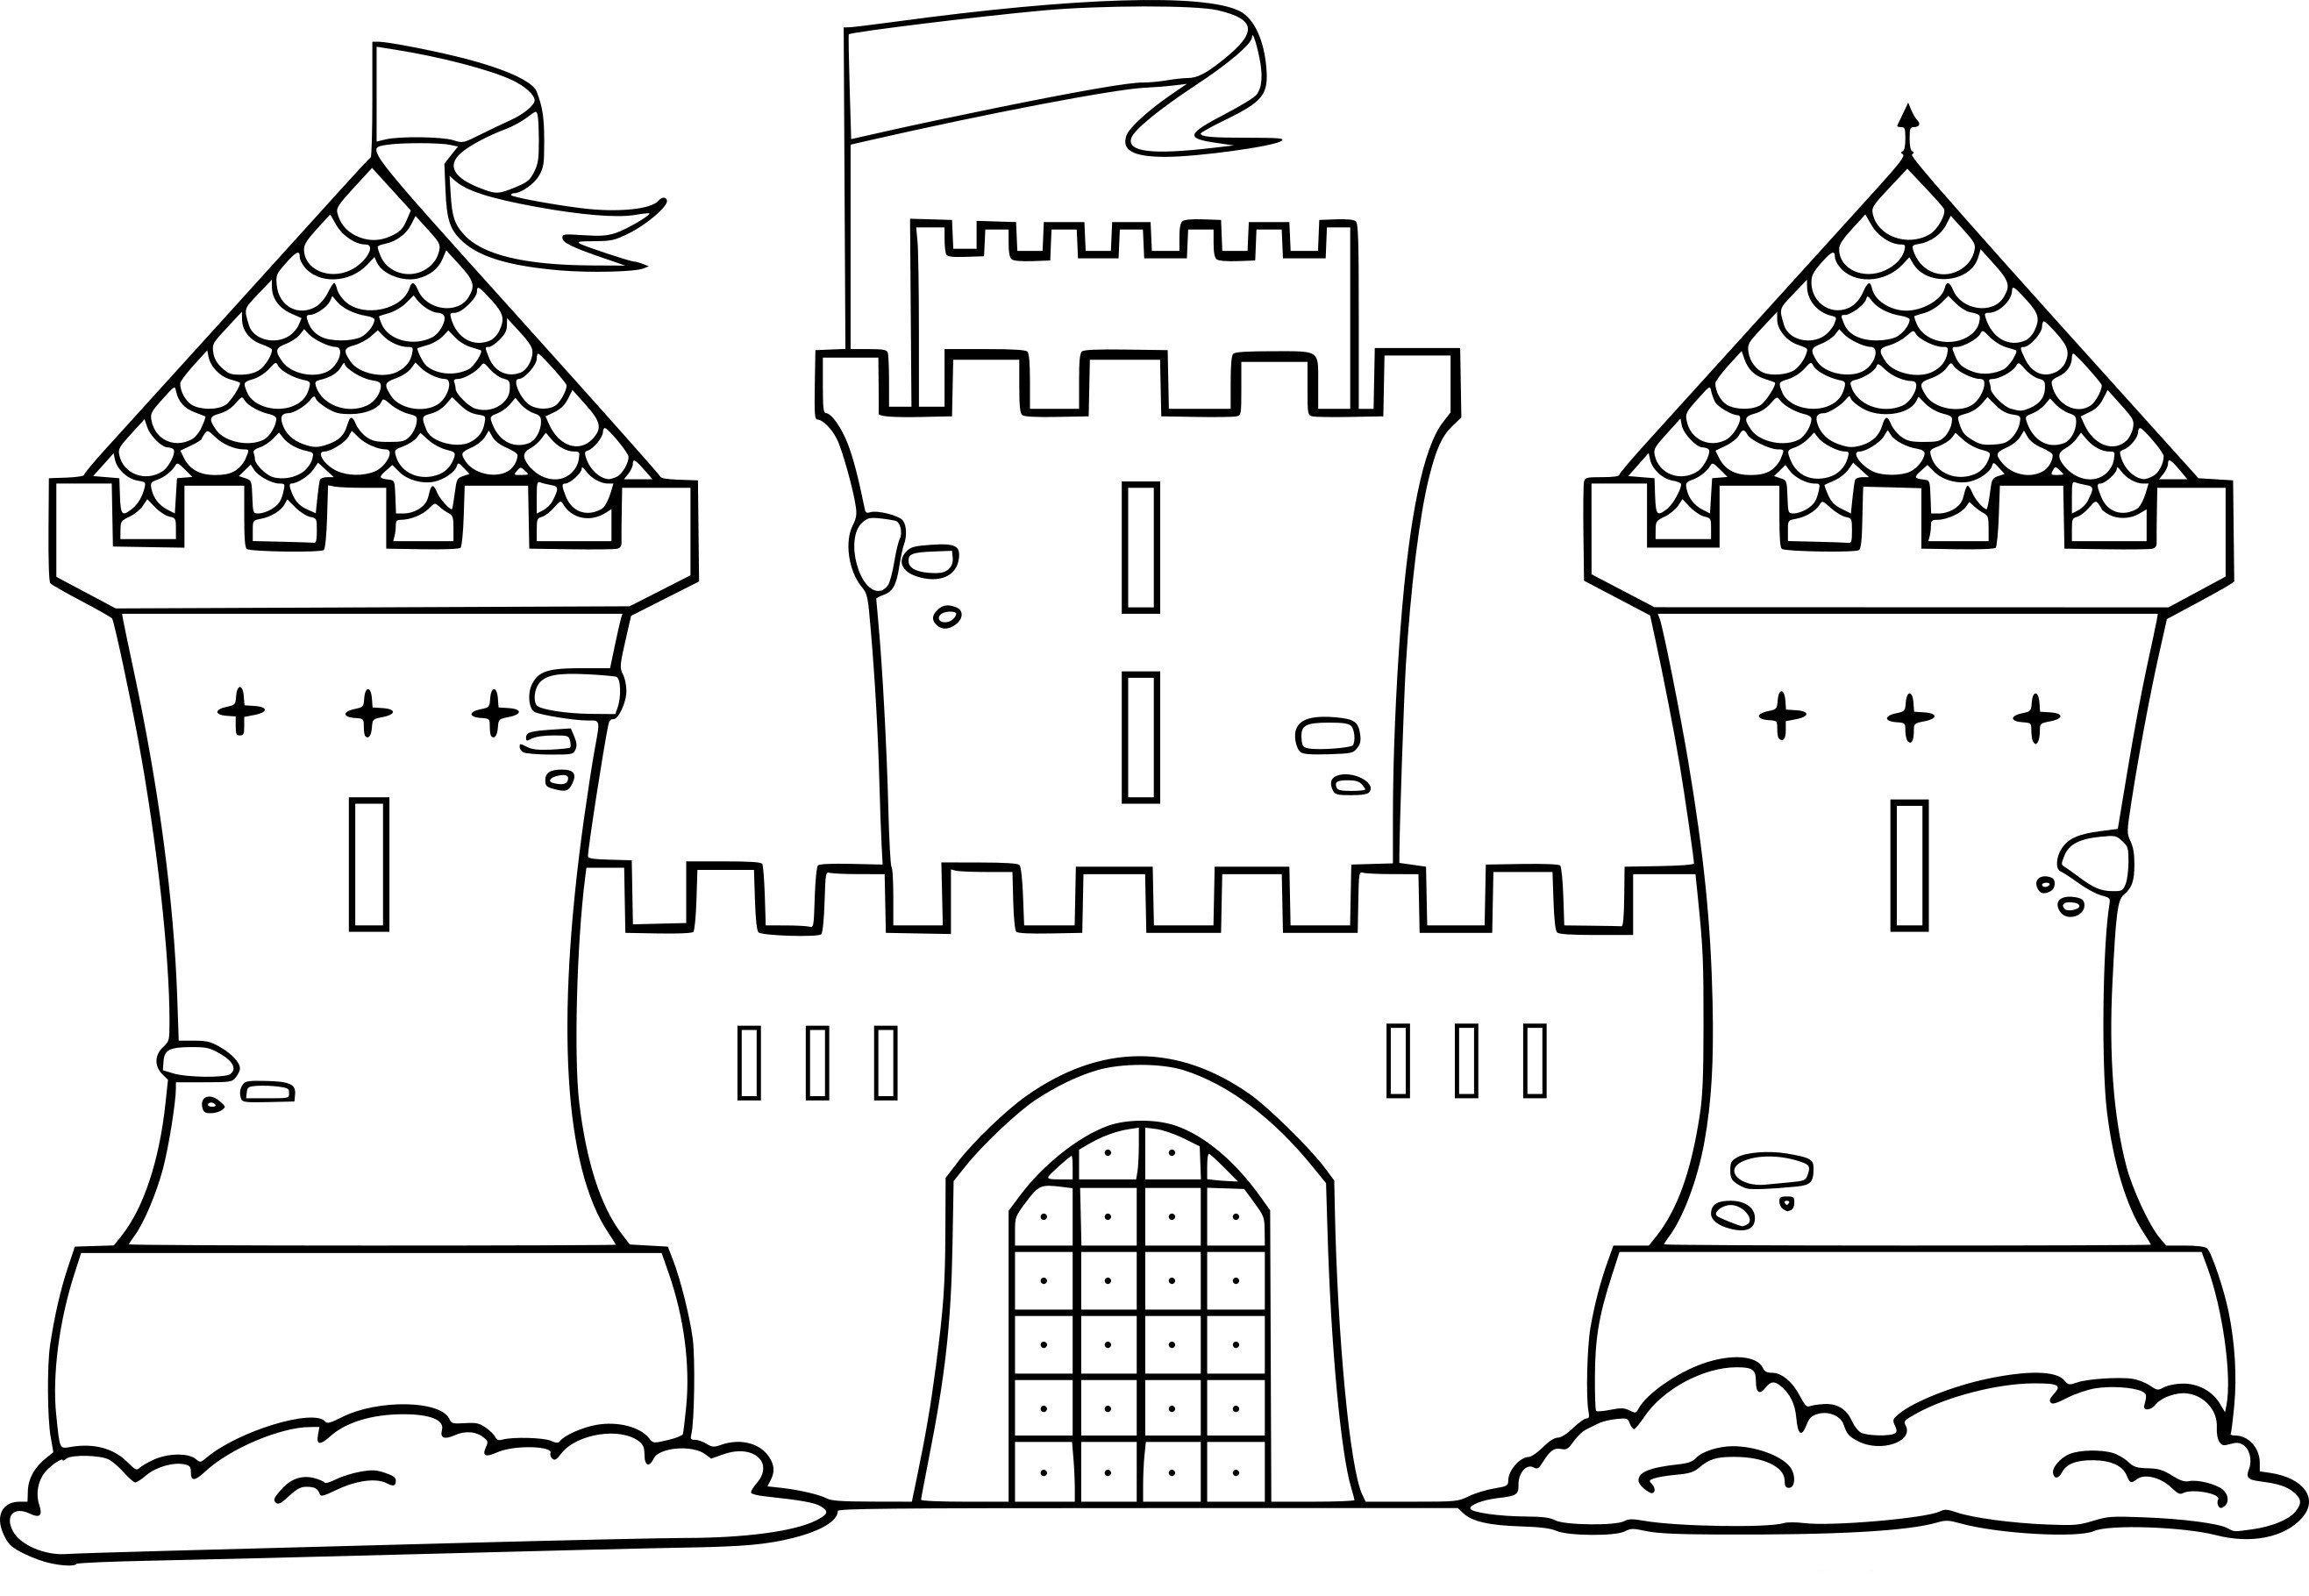 Как нарисовать замок, дворец карандашом поэтапно?